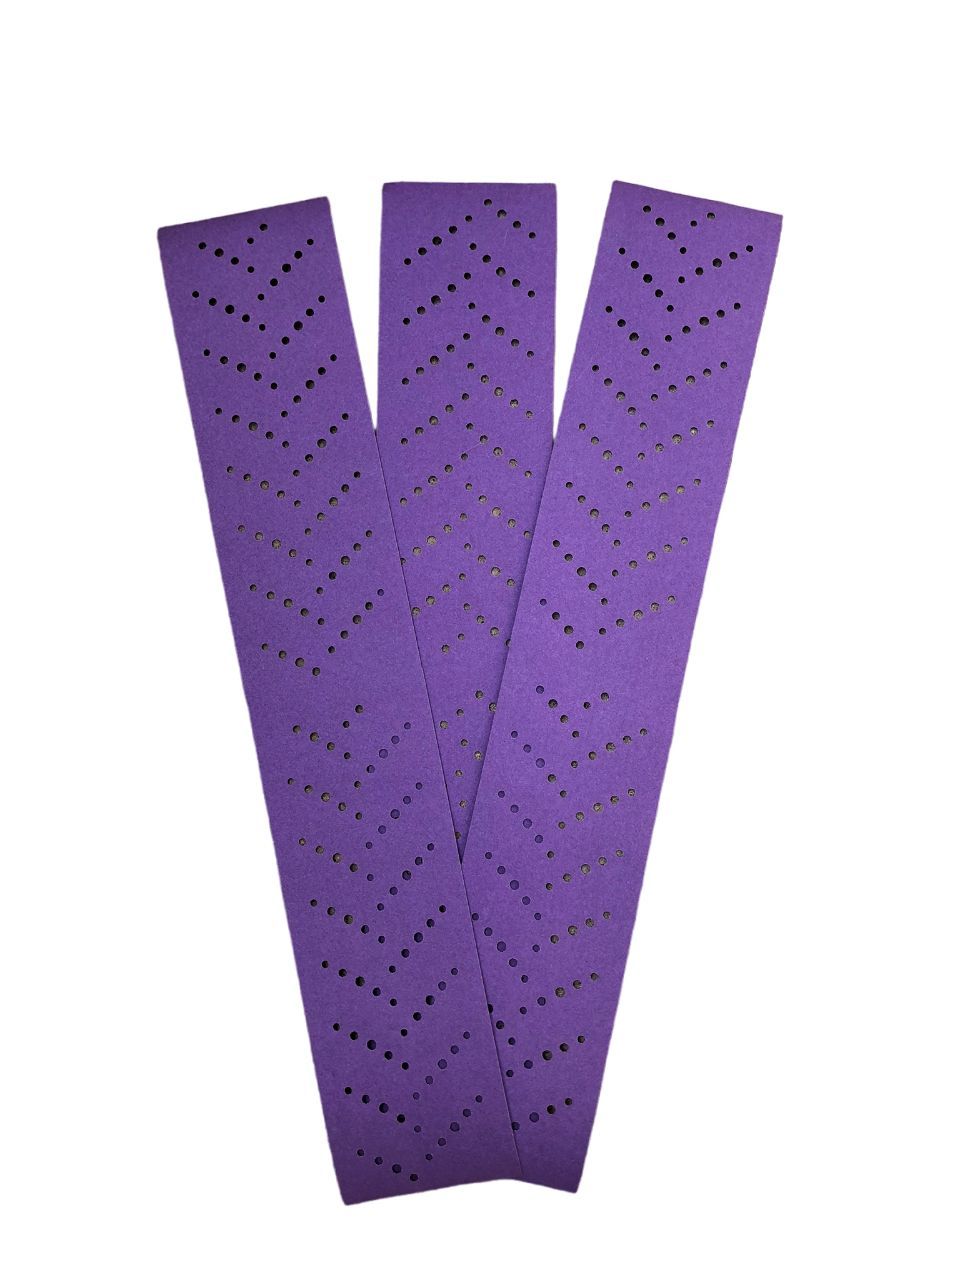 3m 50533 Hookit Purple+ 734u абразивный с мультипылеотводом 150мм p400 (5шт). Полоска абразивная Purple+ 3m 70*396 p80. Кубитрон полоски шлифовальные. 3m полоски абразивные. Абразивные полоски